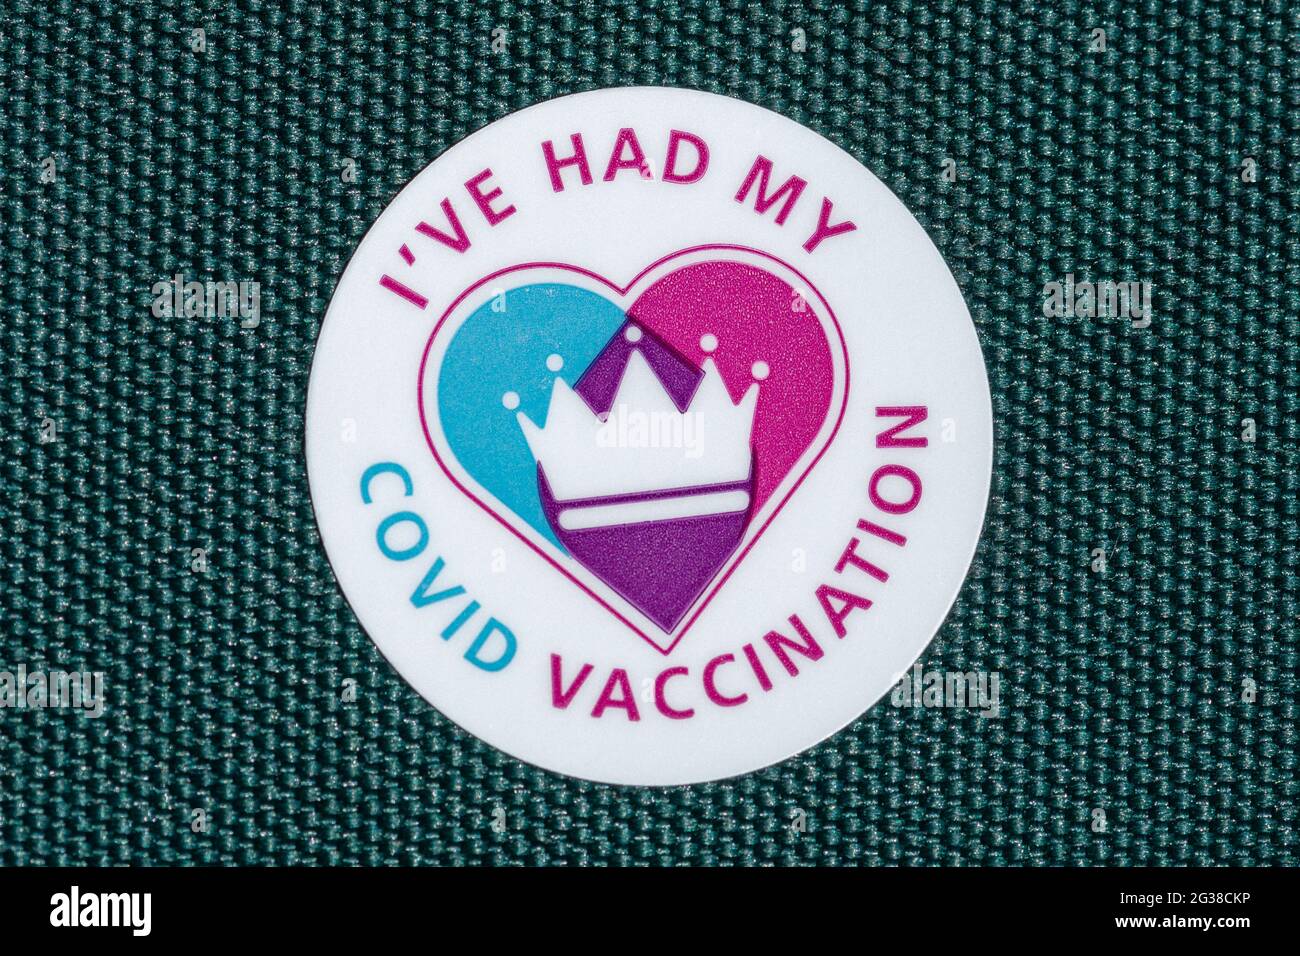 J'ai reçu mon autocollant de vaccination contre le covid, UK, 2021, faisant référence au vaccin contre le coronavirus Banque D'Images